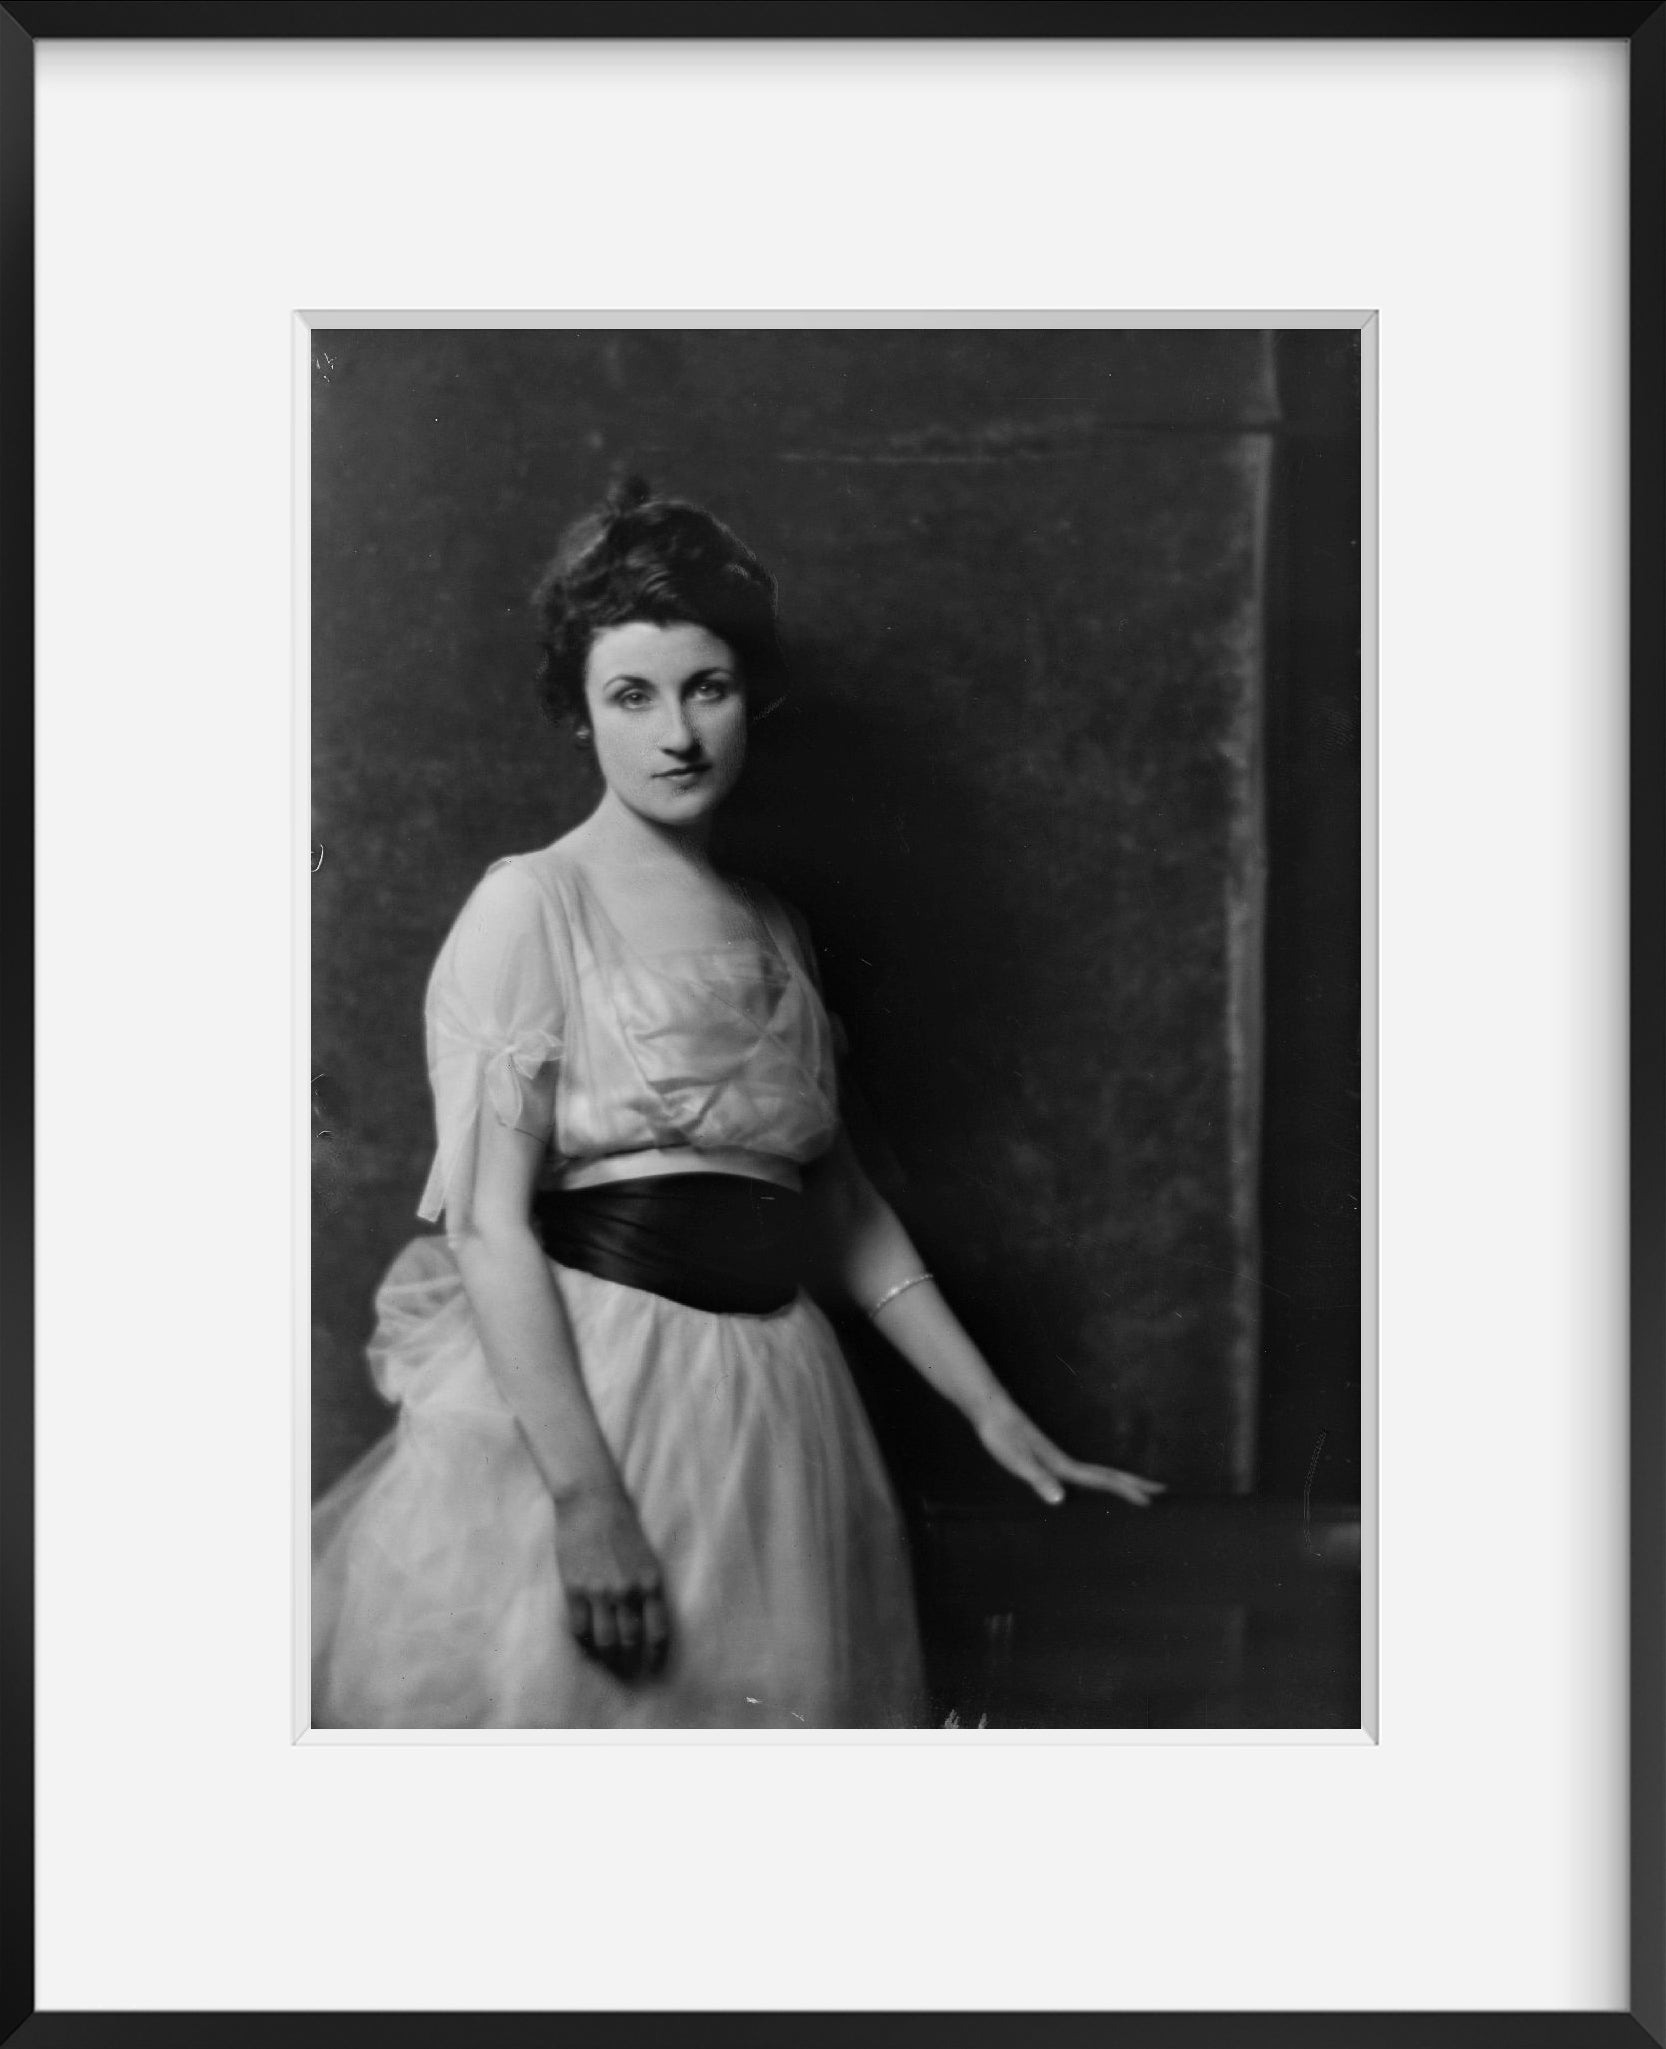 Photo: Paskus, Mrs, portrait photographs, women, dresses, Arnold Genthe, 1918